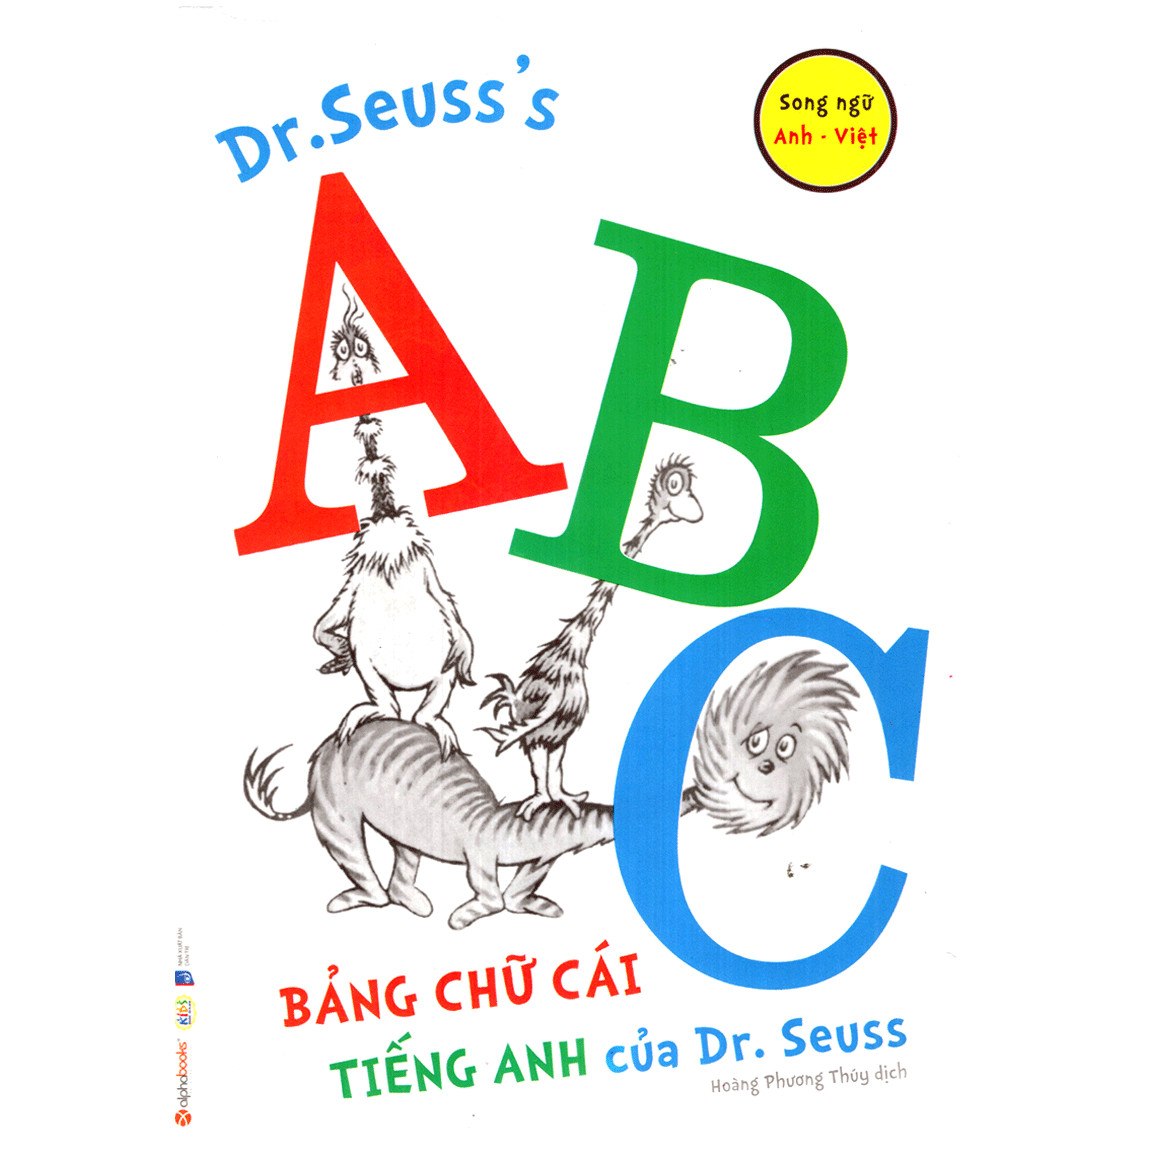 Dr. Seuss’s ABC – Bảng Chữ Cái Tiếng Anh Của Dr.Seuss (Quà tặng: Cây viết Galaxy)